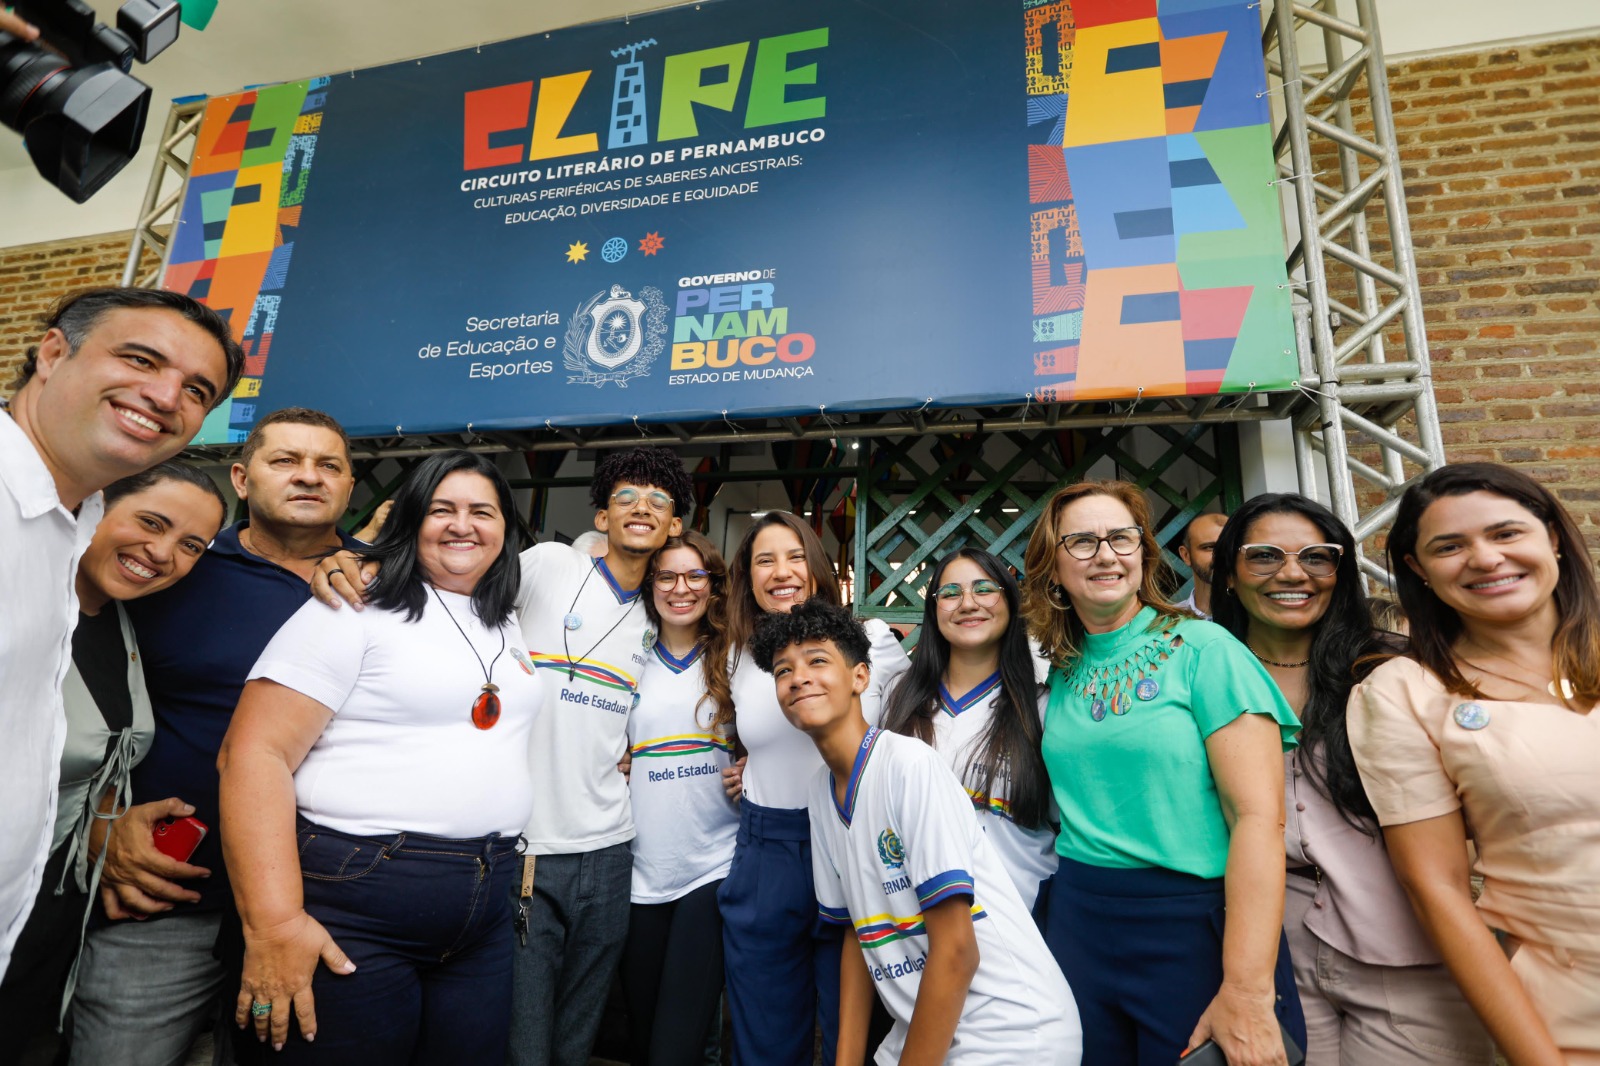  Governadora Raquel Lyra lança Circuito Literário de Pernambuco em Caruaru para promover educação e cultura em todo o Estado